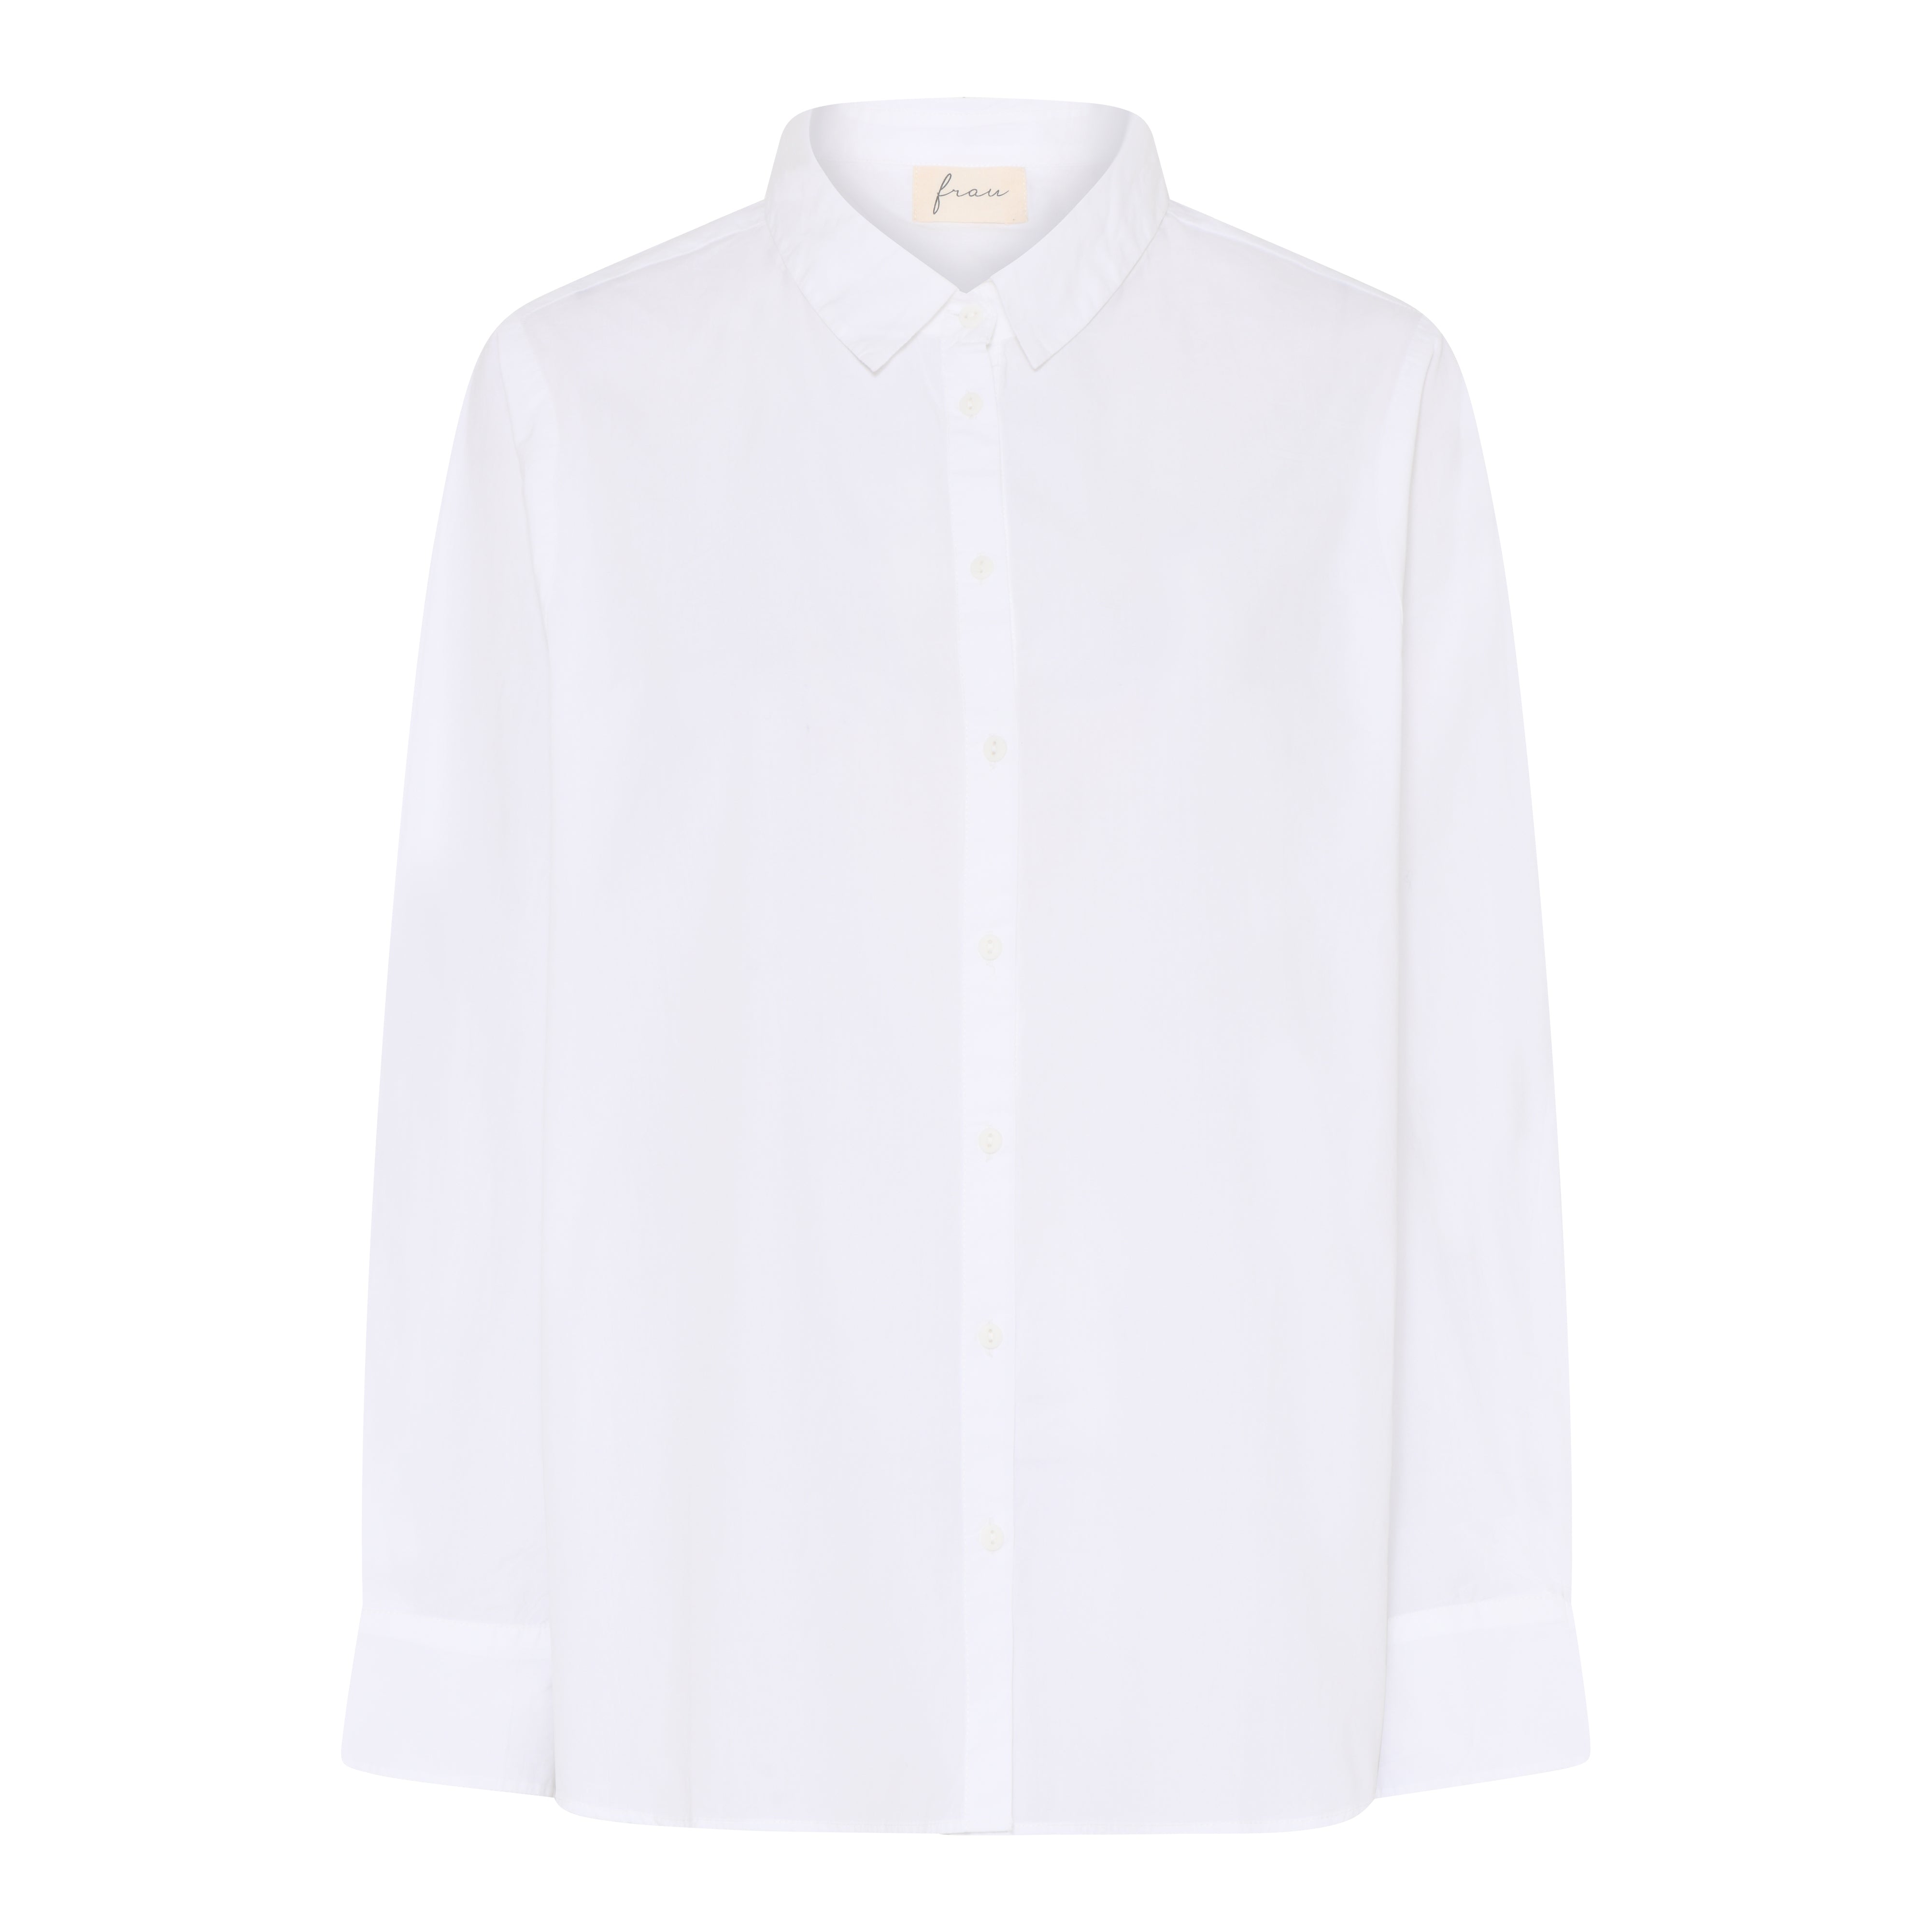 Frau Dhaka ls shirt bright white